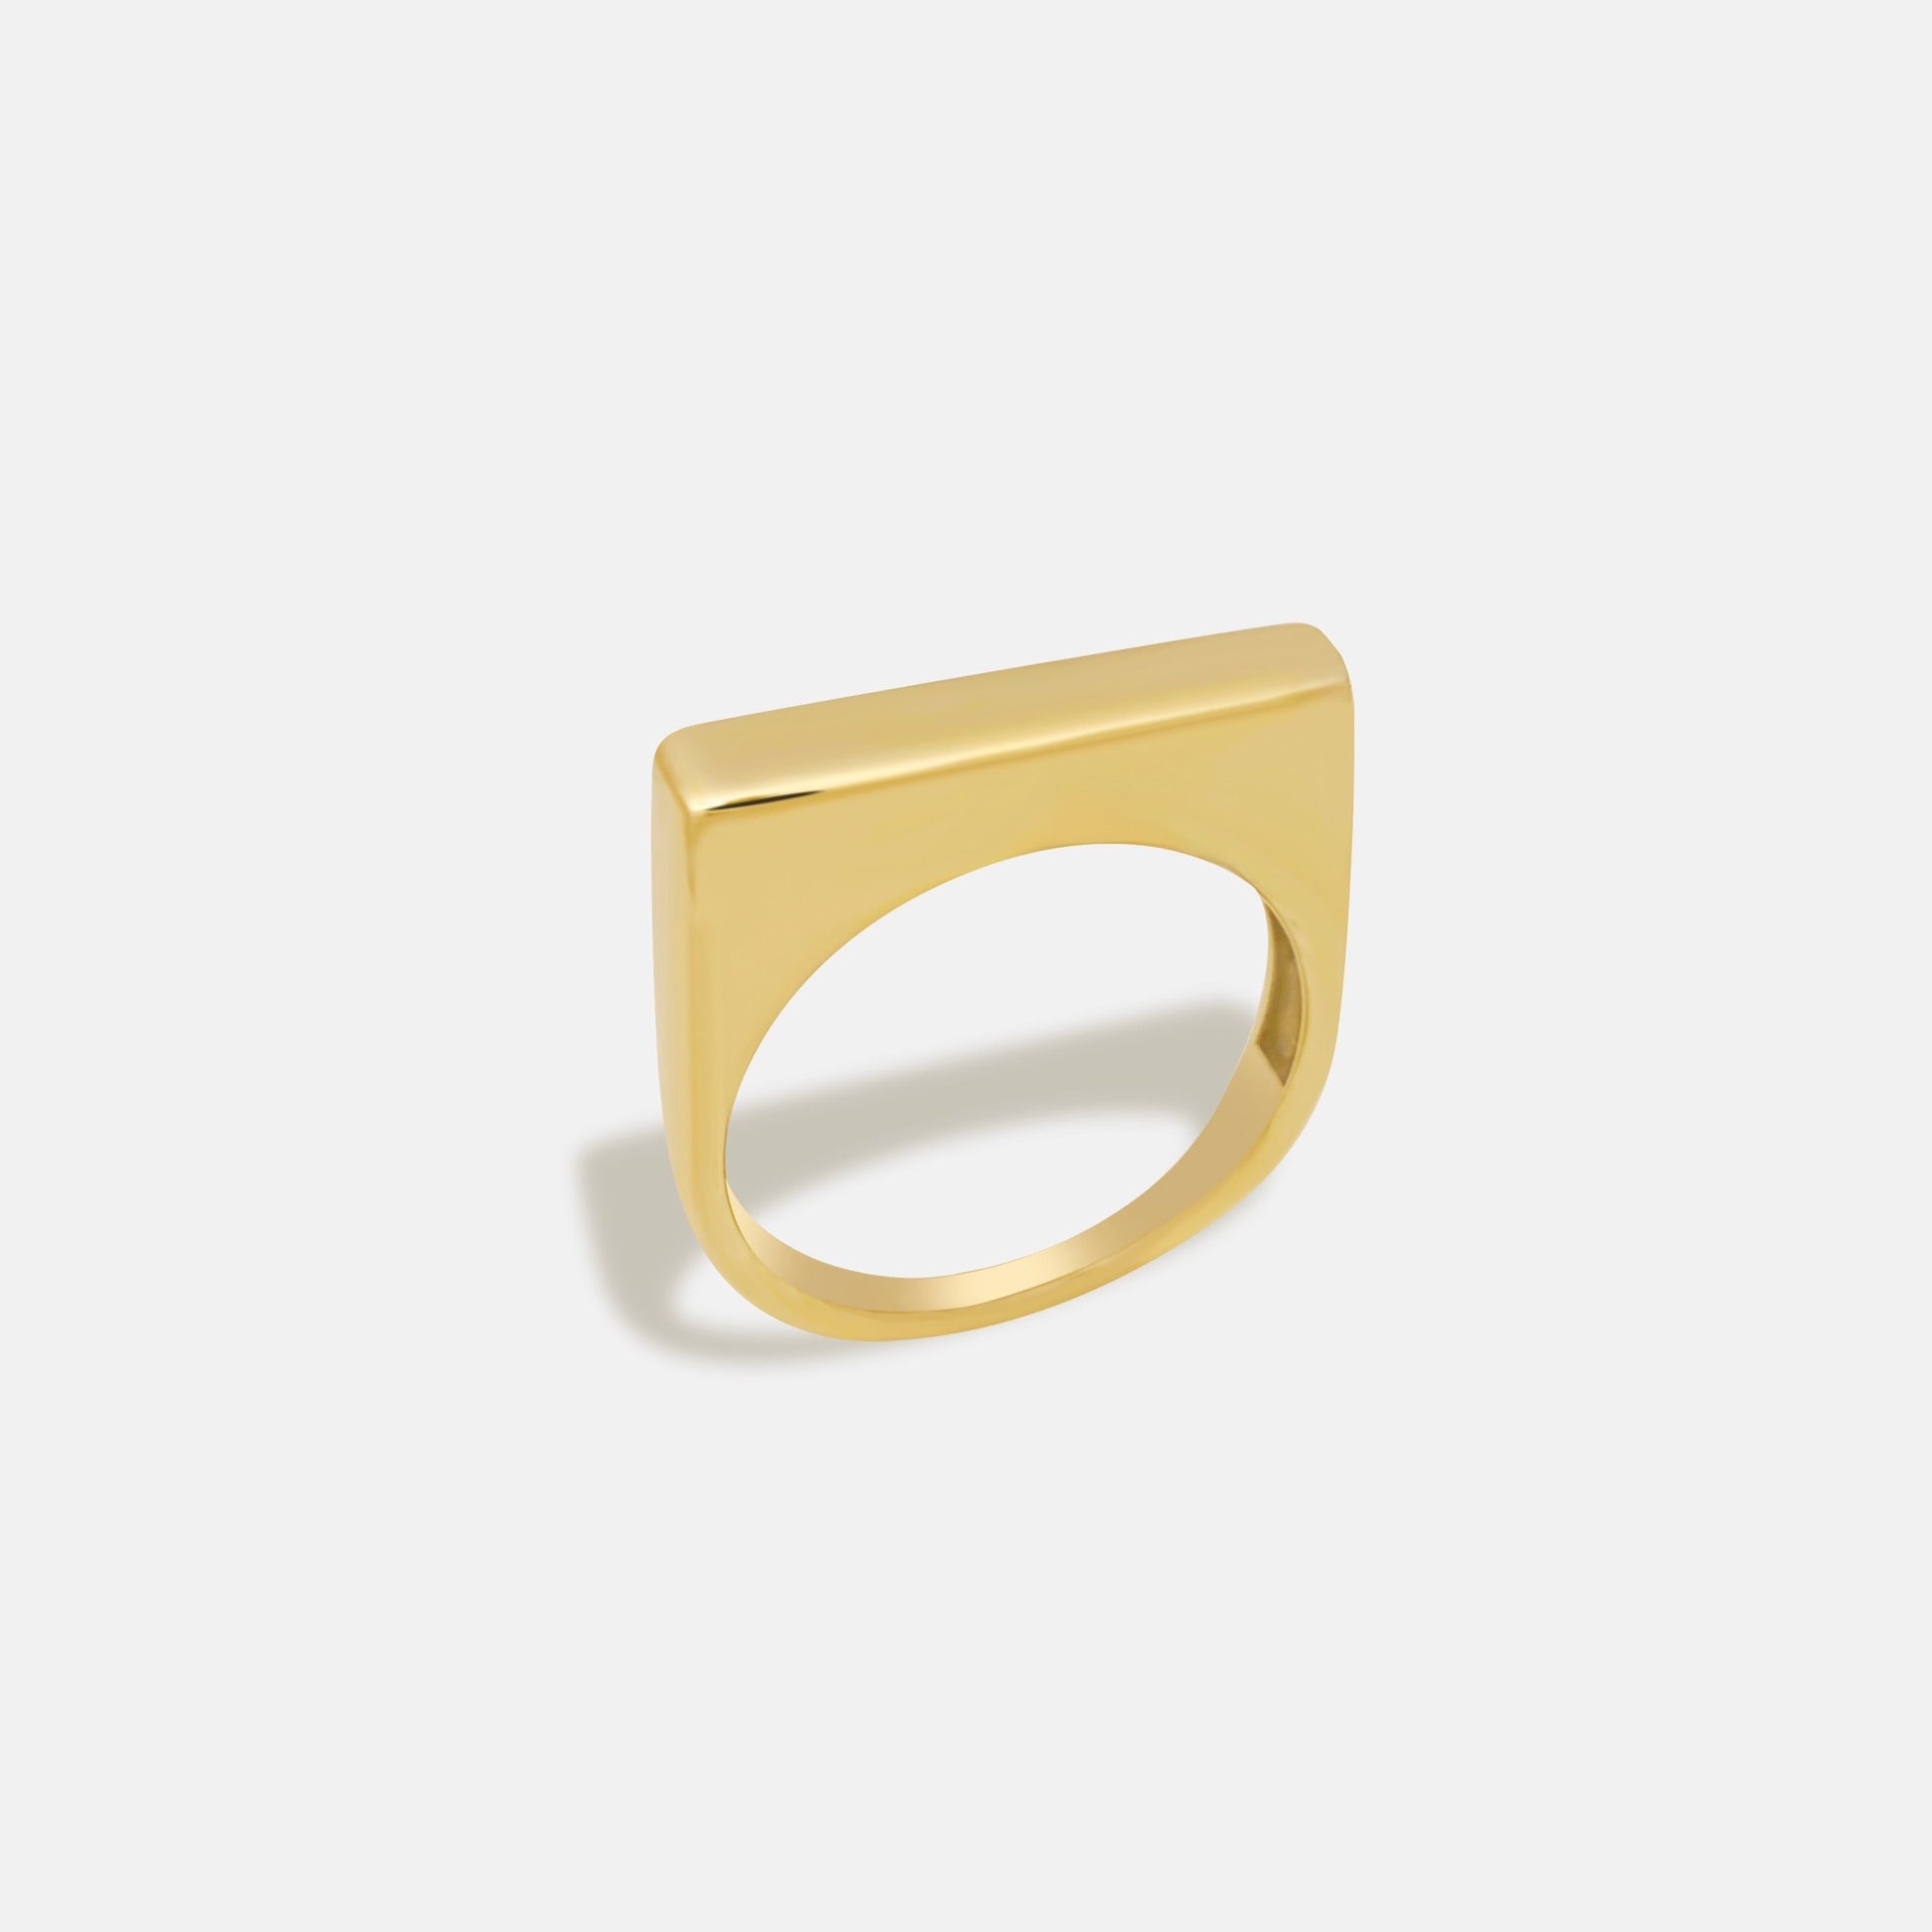 Slim Block Ring in 18k gold